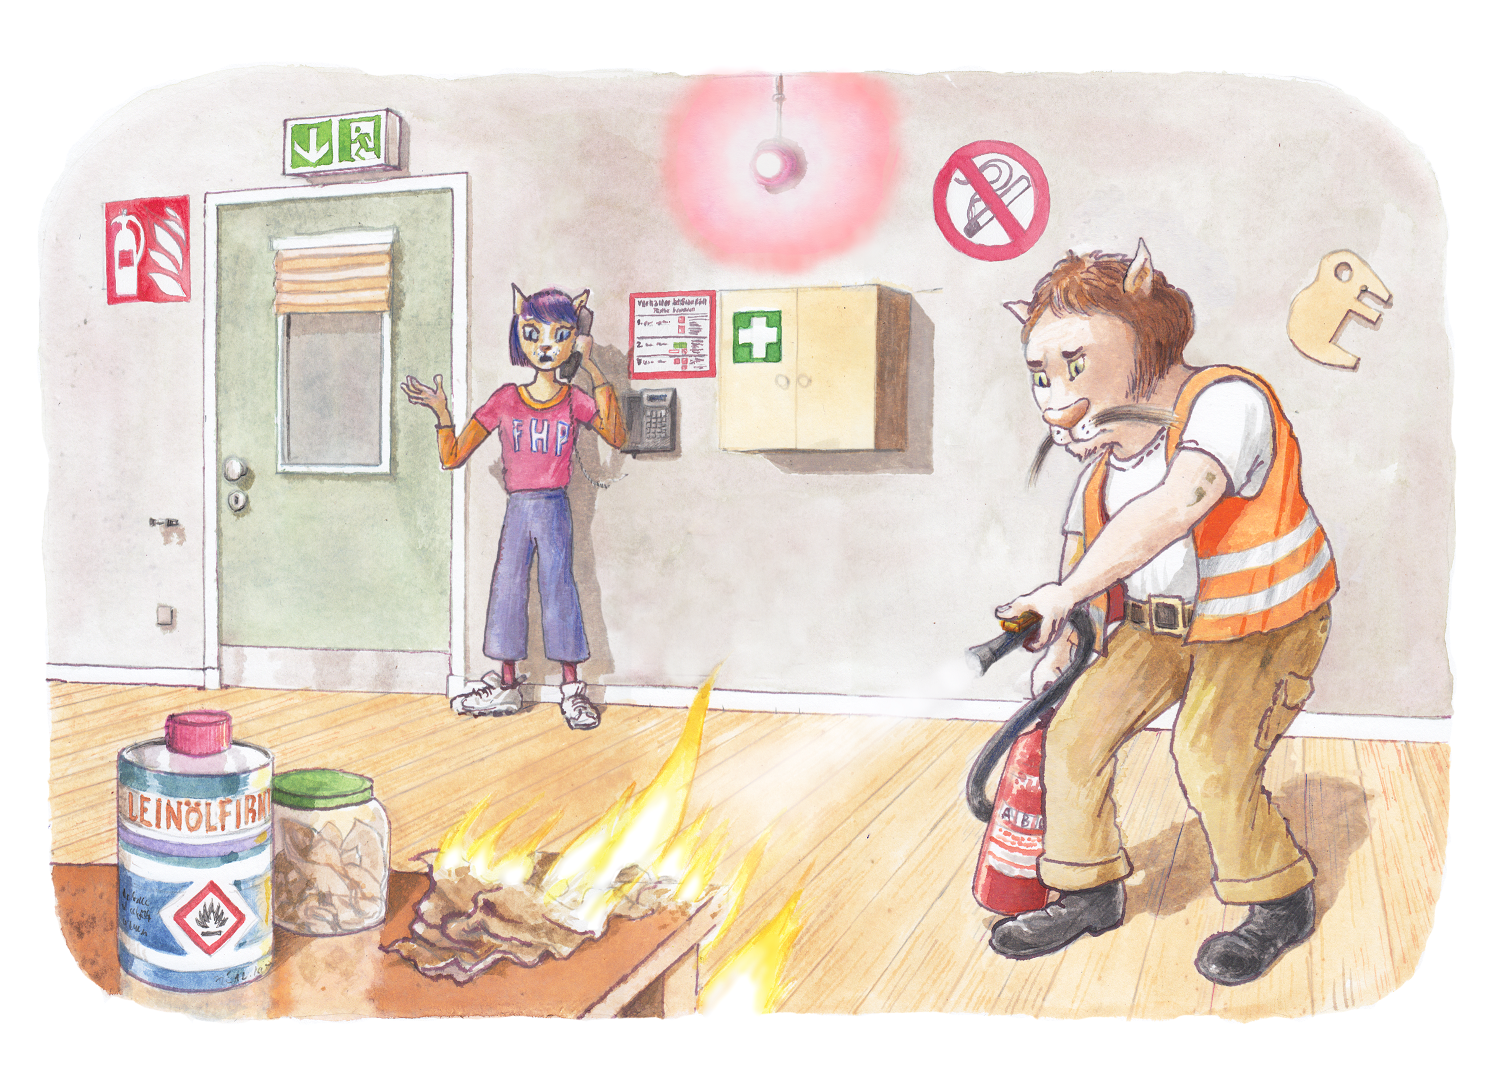 Gezeichnete Figuren demonstrieren, wie im Brandfall reagiert werden sollte.